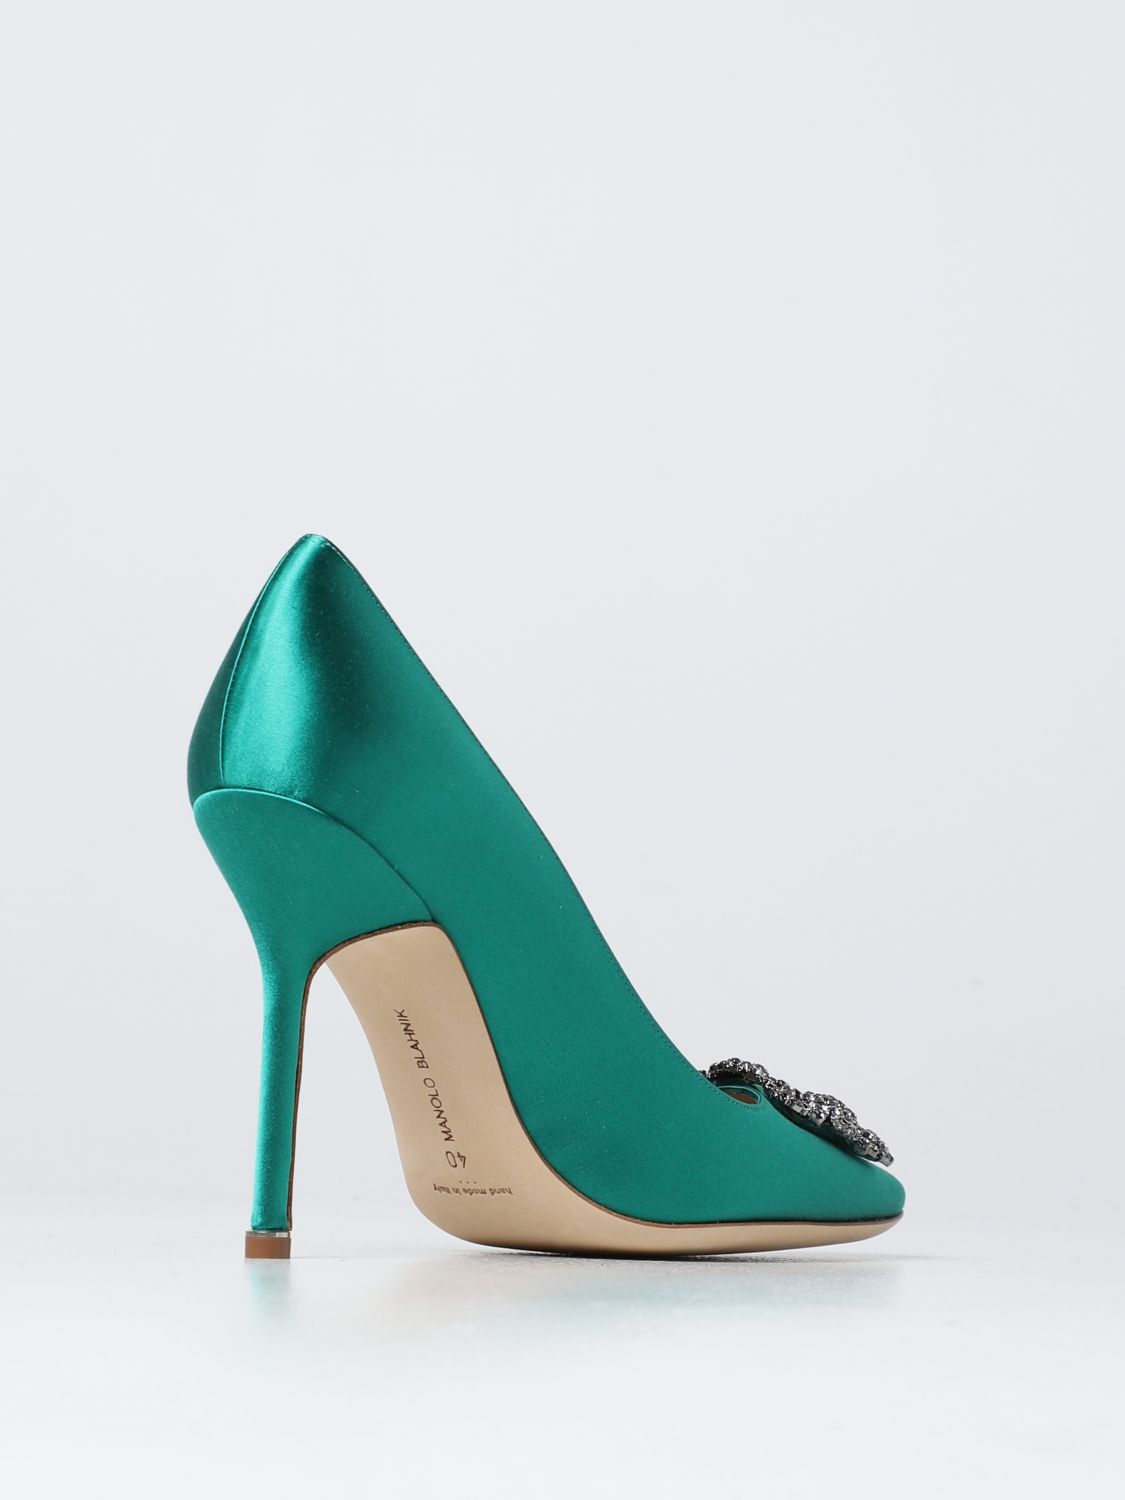 MANOLO BLAHNIK: Zapatos de salón para mujer, Esmeralda | Zapatos De SalÓN Manolo Blahnik 9XX06640048 línea en GIGLIO.COM